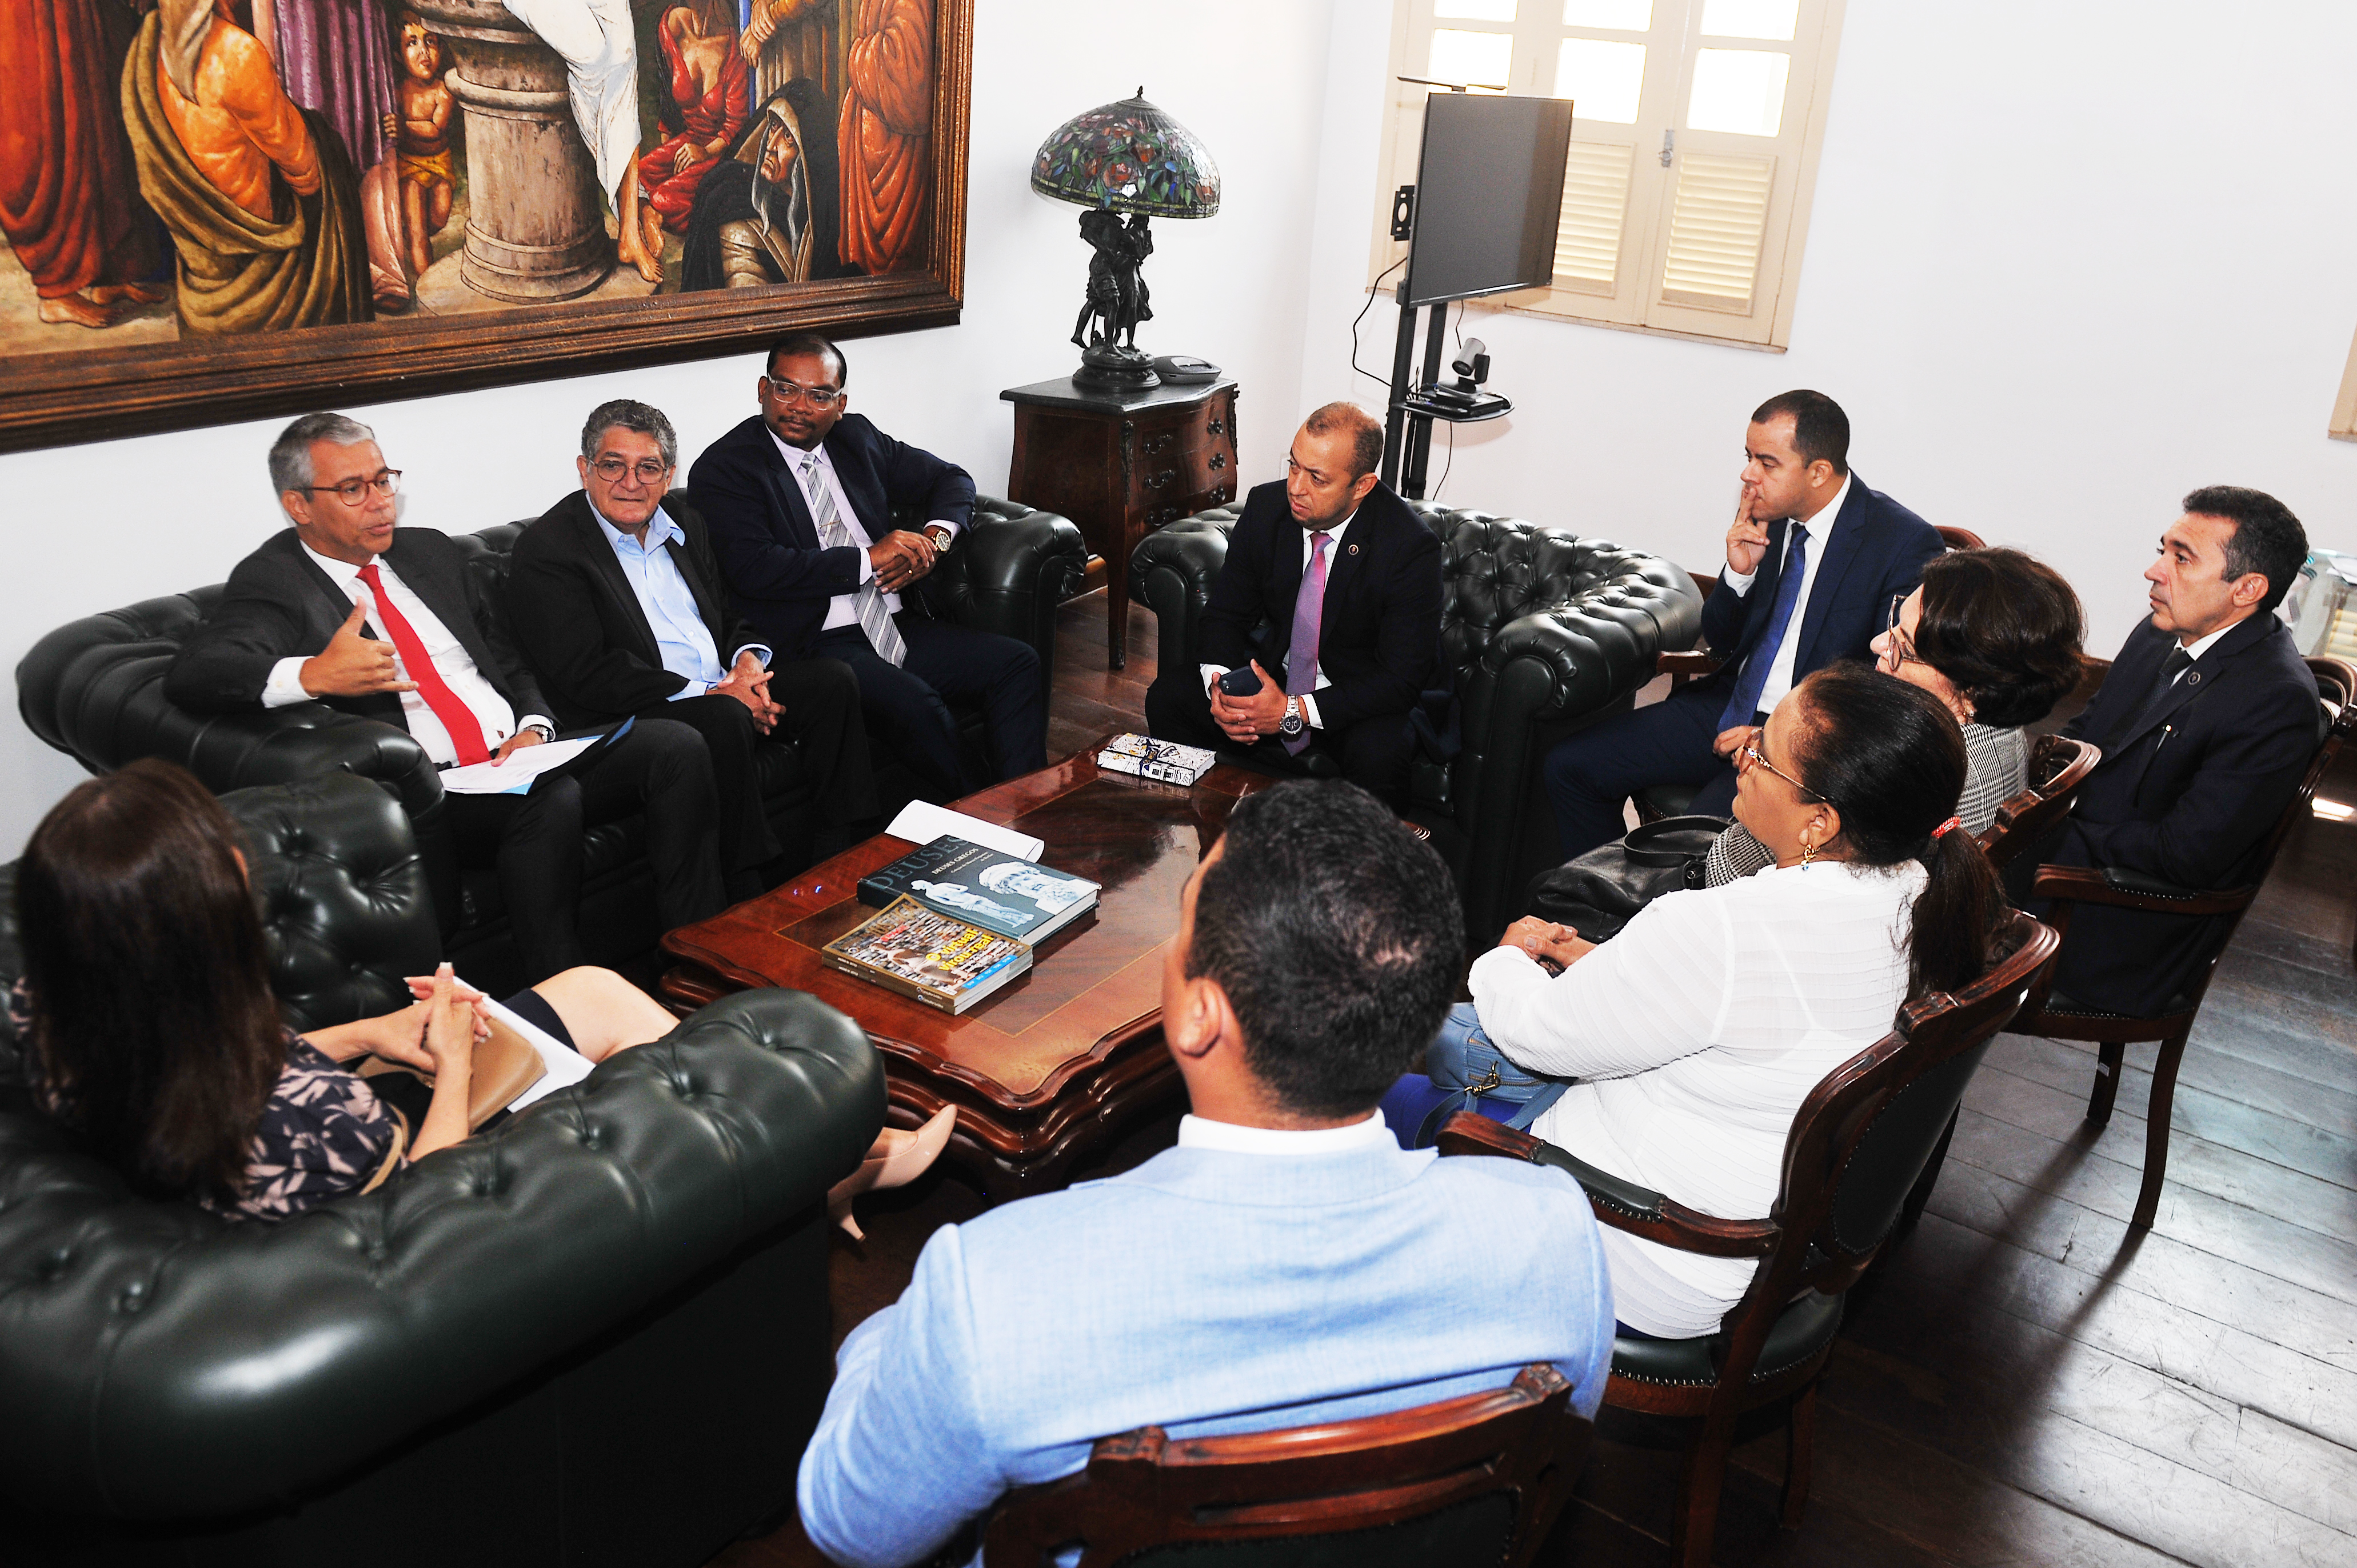 O presidente do TJMA, desembargador Paulo Velten com magistrados sentados ao redor em reunião no gabinete.